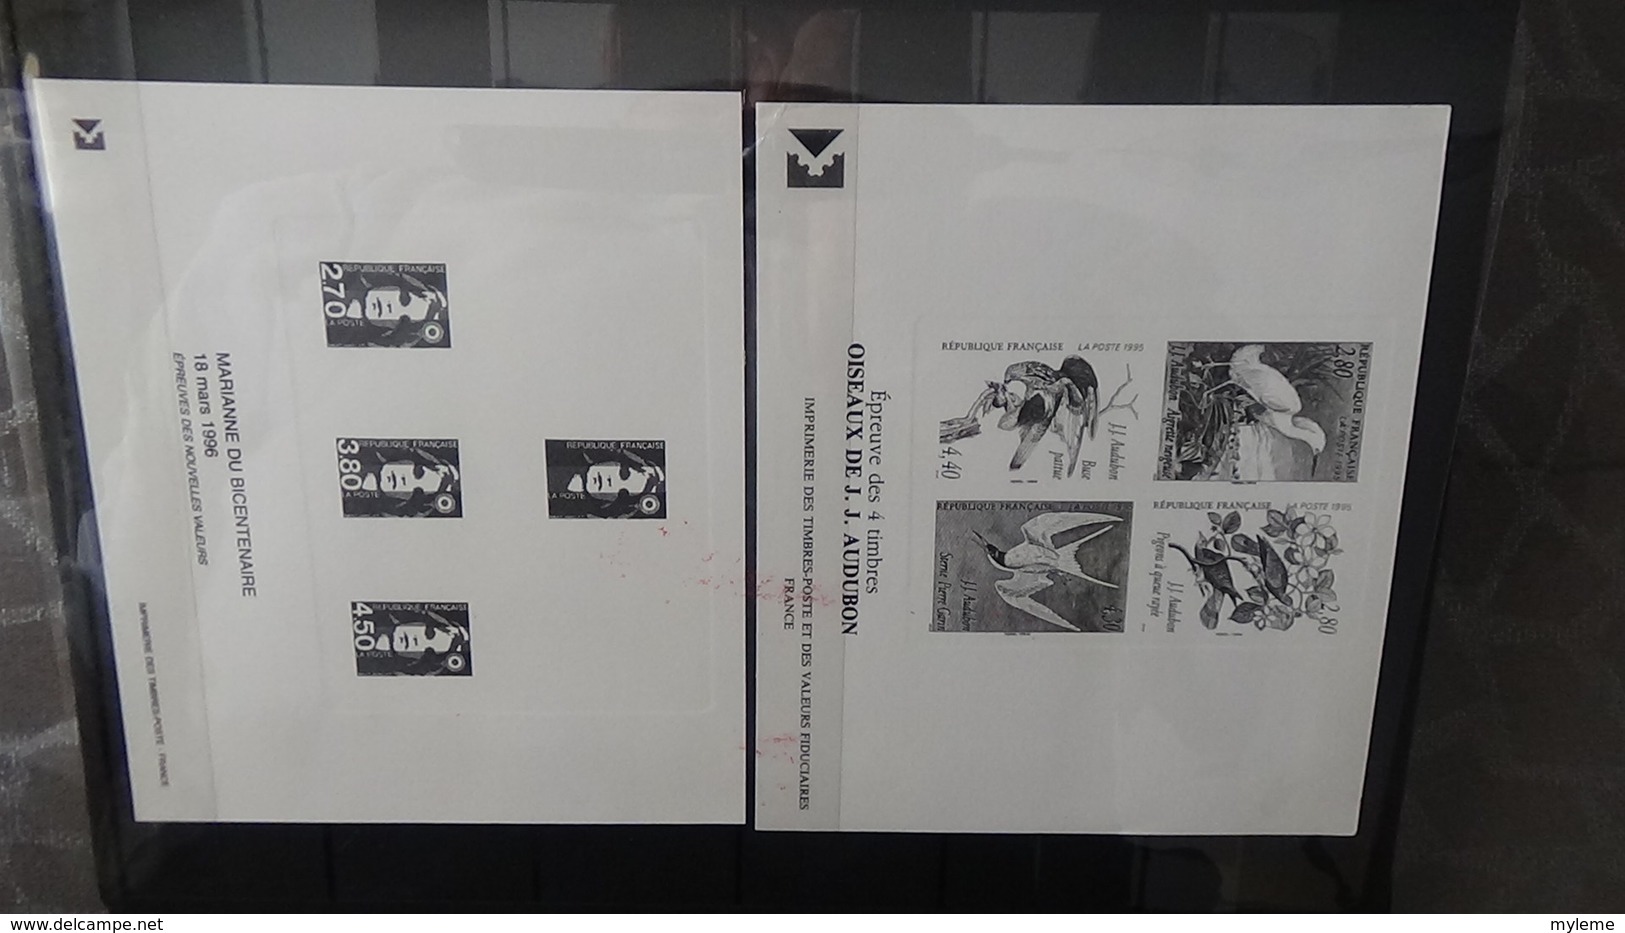 Collection de timbres, carnets, blocs de France avec oblitérations soignées. A saisir !!!